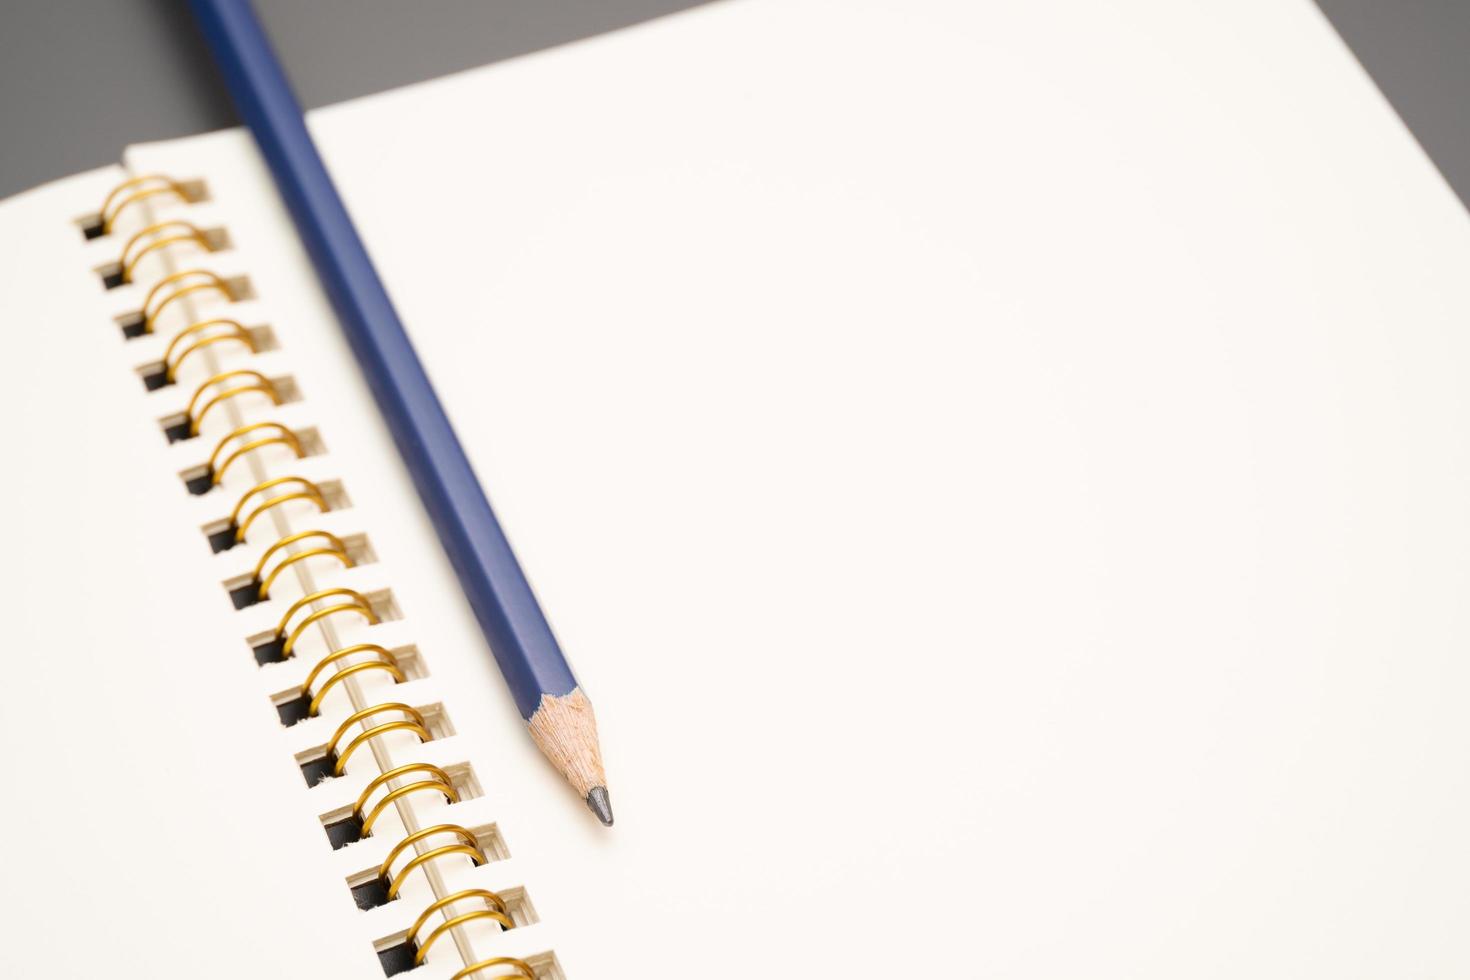 cuaderno con un lápiz. cuaderno espiral abierto en blanco con lápiz foto